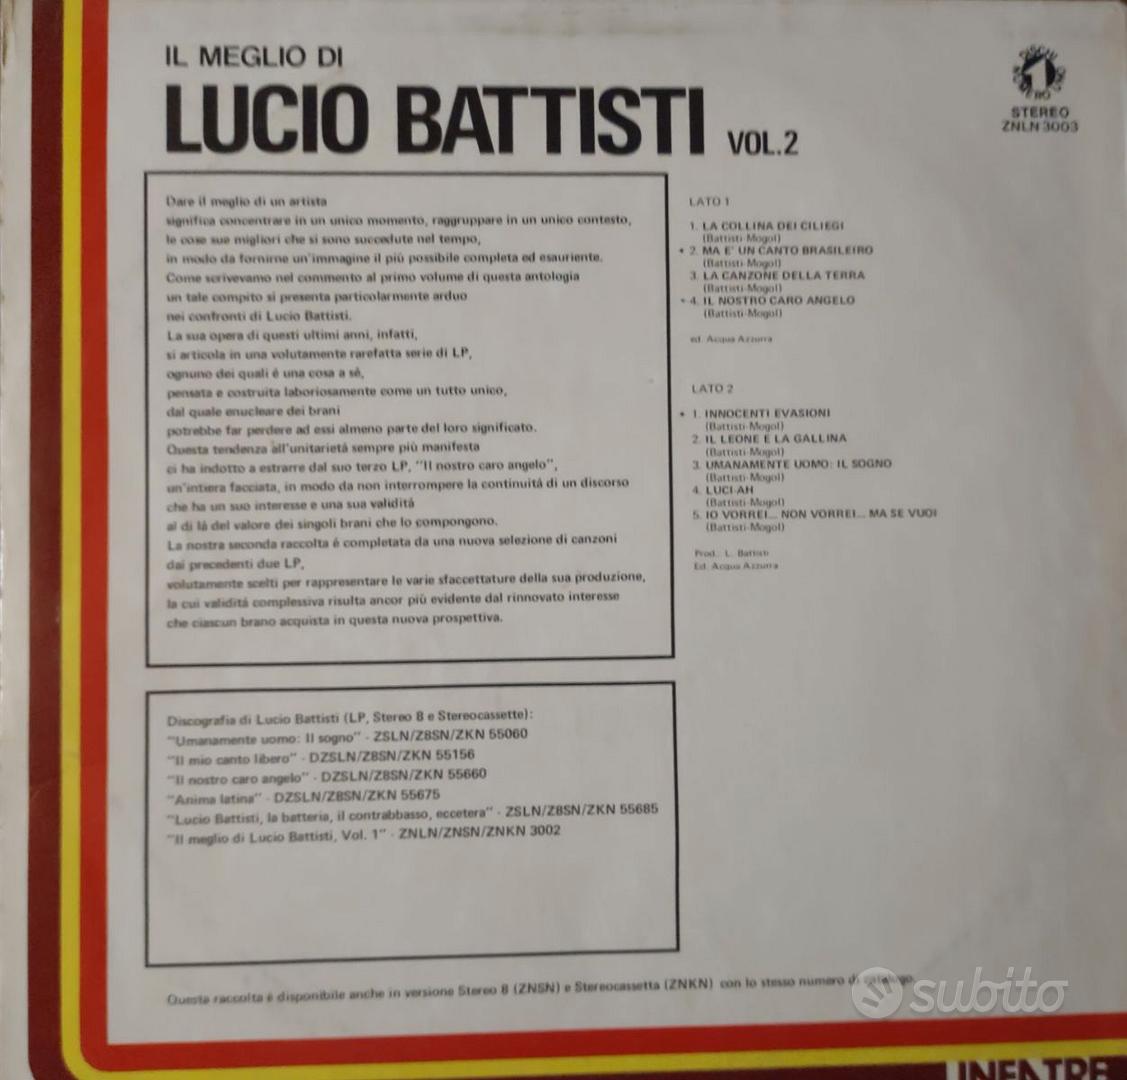 Vinile 2 LP 33 giri Lucio Battisti - Musica e Film In vendita a Brescia